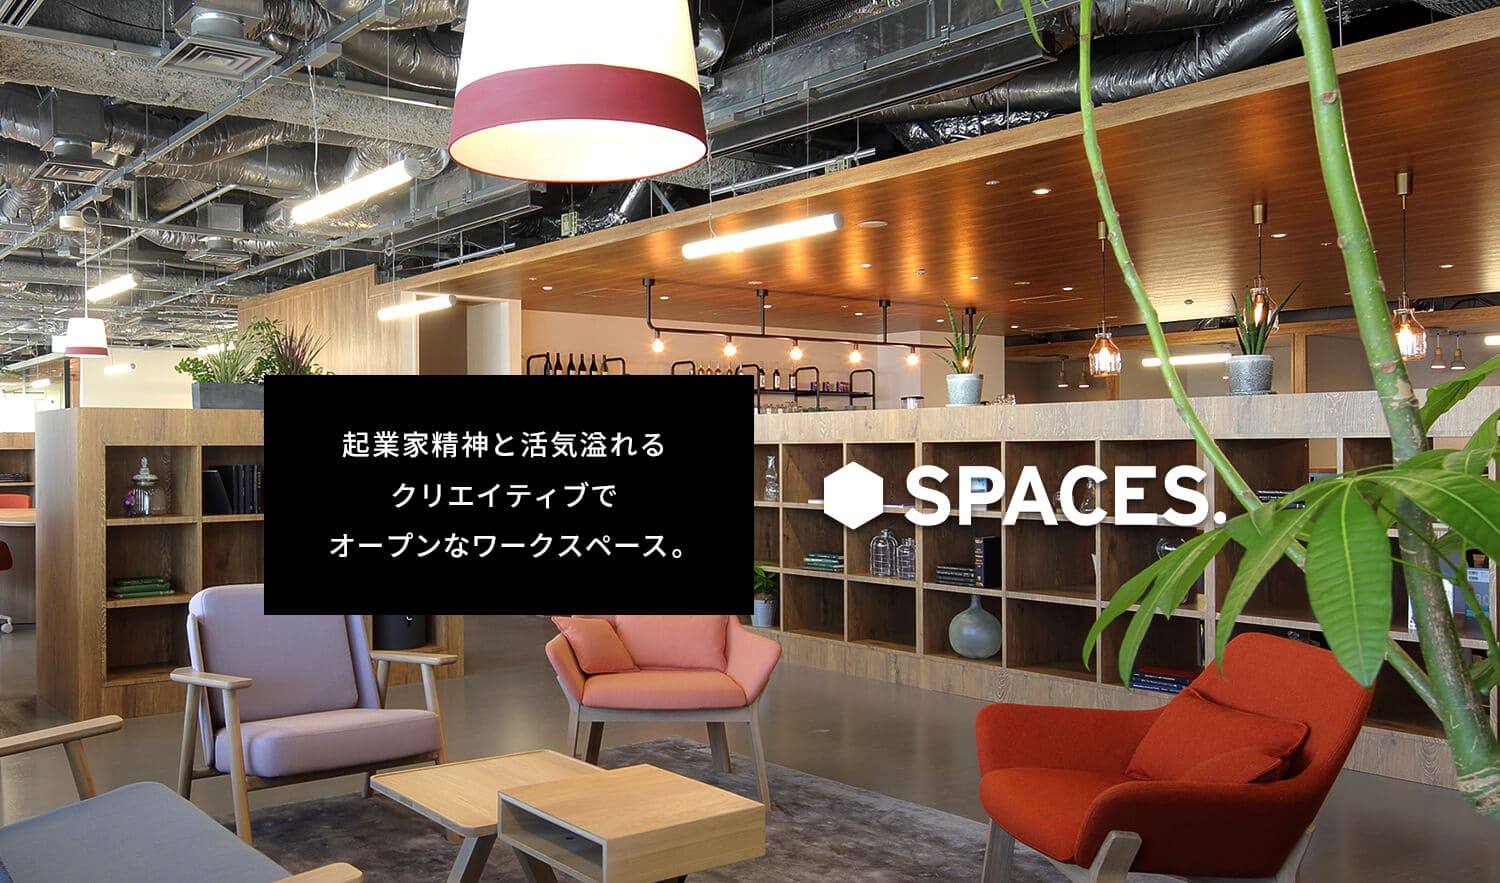 SPACES 起業家精神と活気溢れるクリエイティブでオープンなワークスペース。